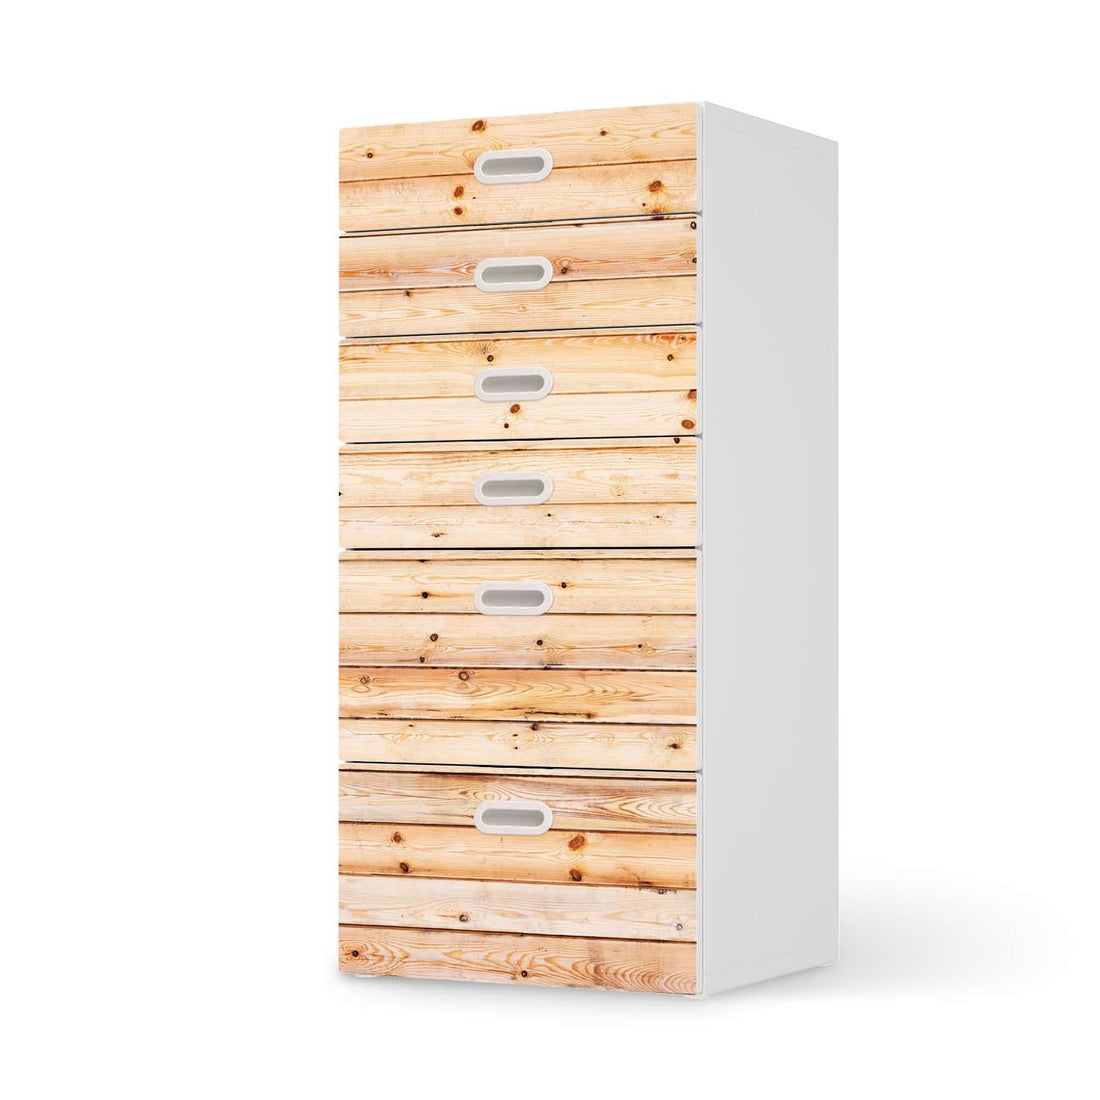 Klebefolie für Möbel Bright Planks - IKEA Stuva / Fritids Kommode - 6 Schubladen  - weiss